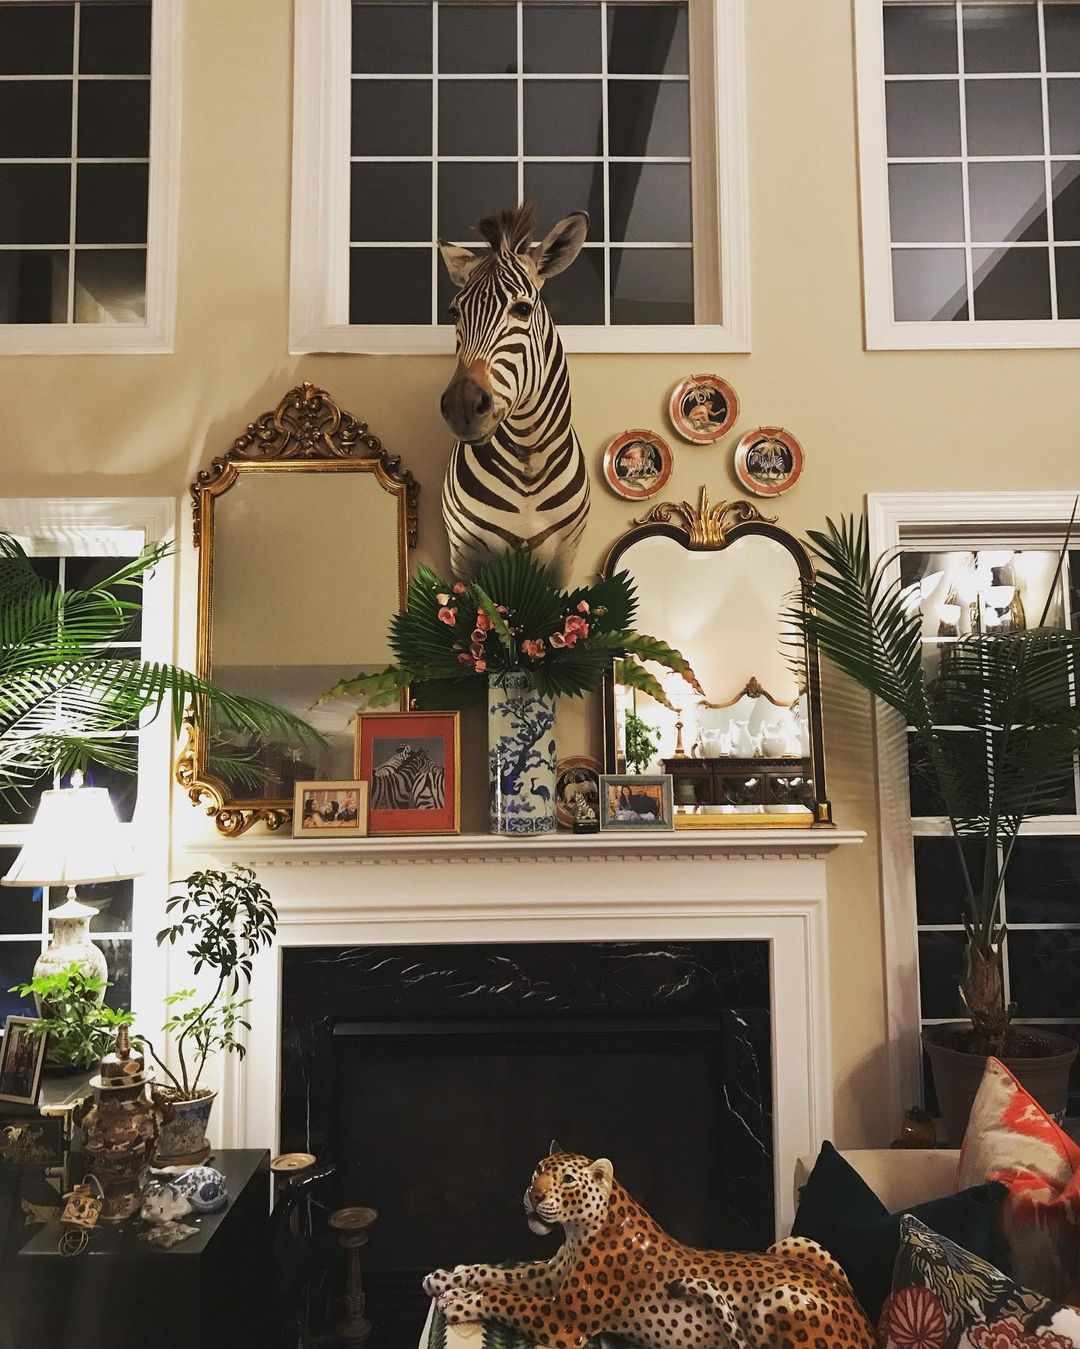 zebra sculpture in living room